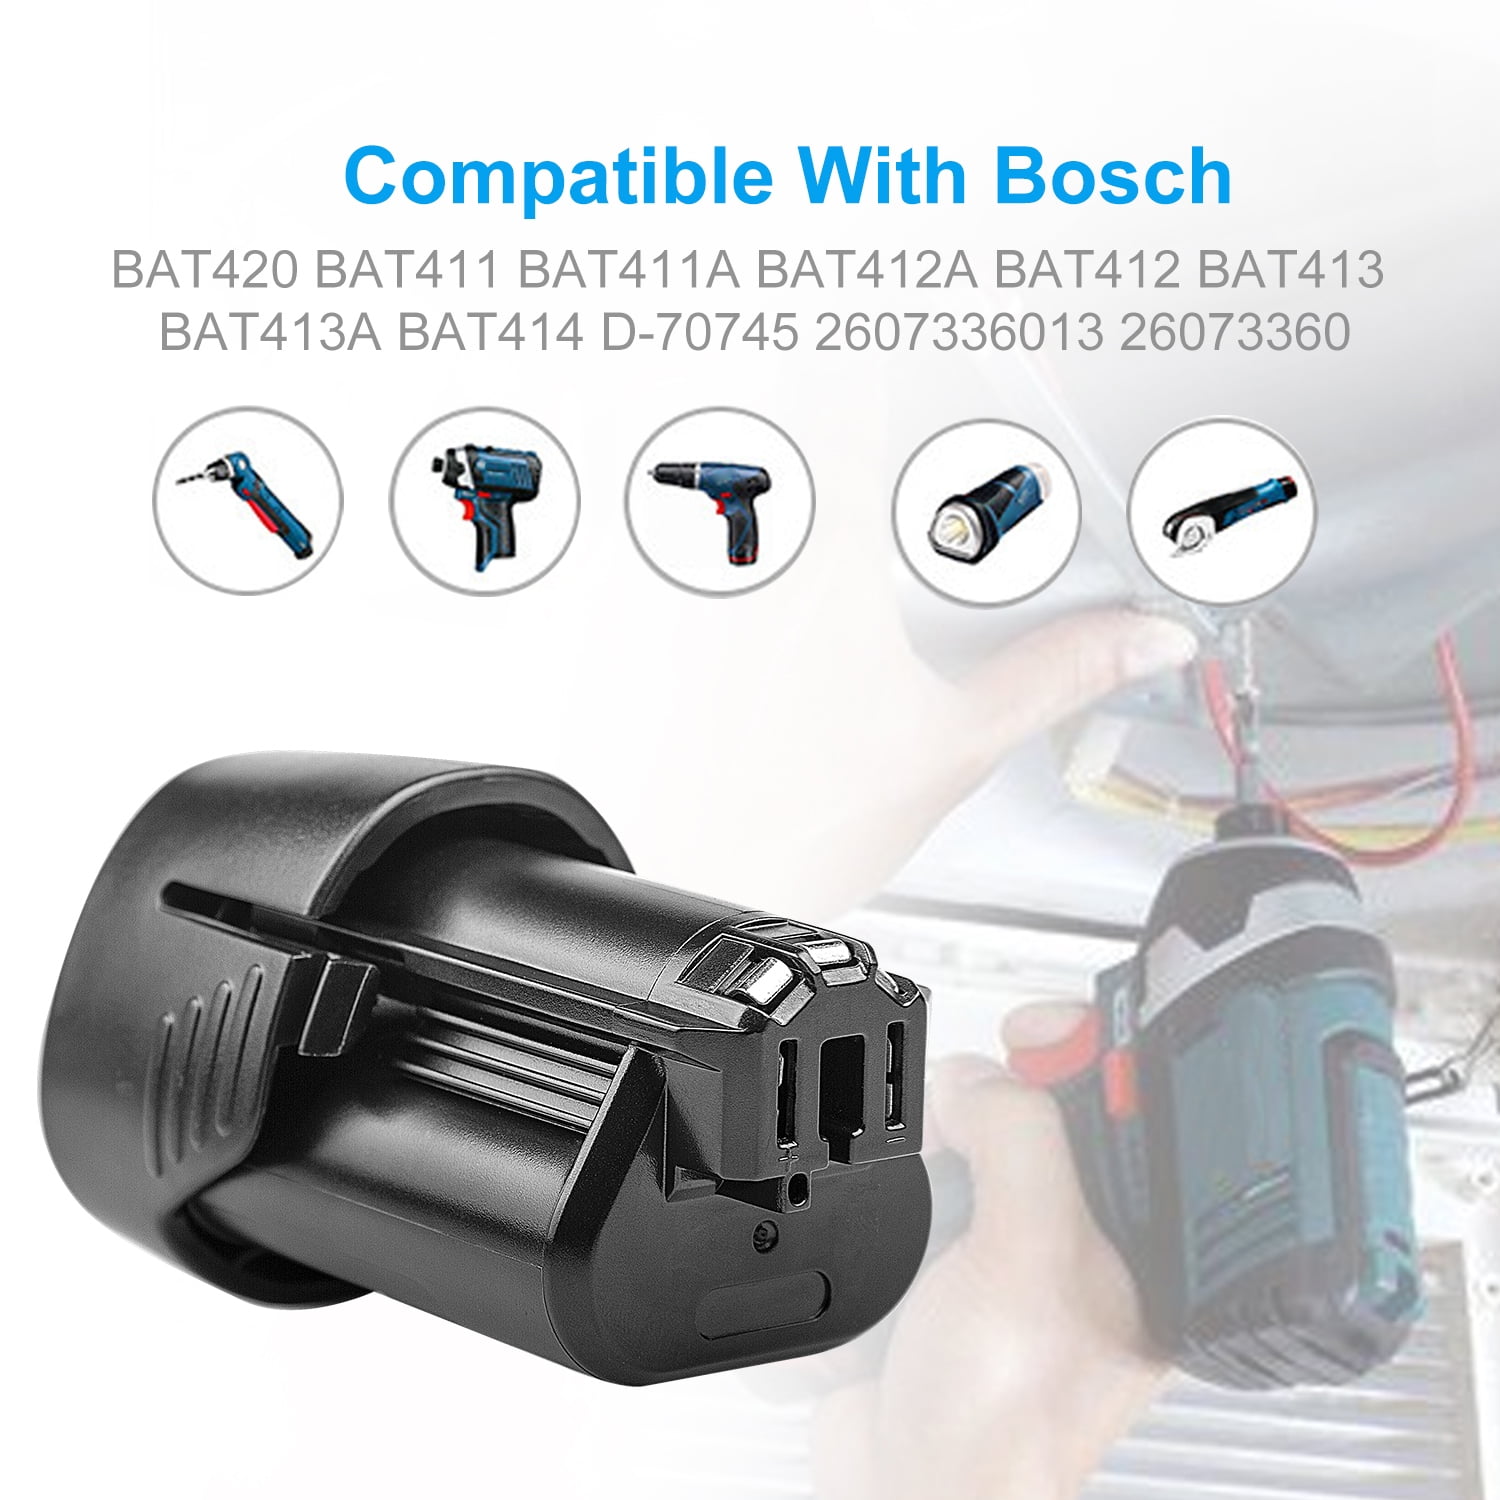 2Pack 3.0AH 10.8V Li-ion Battery for Bosch BAT411 GSR GSA GDR GOP GSB GWI 10.8V 